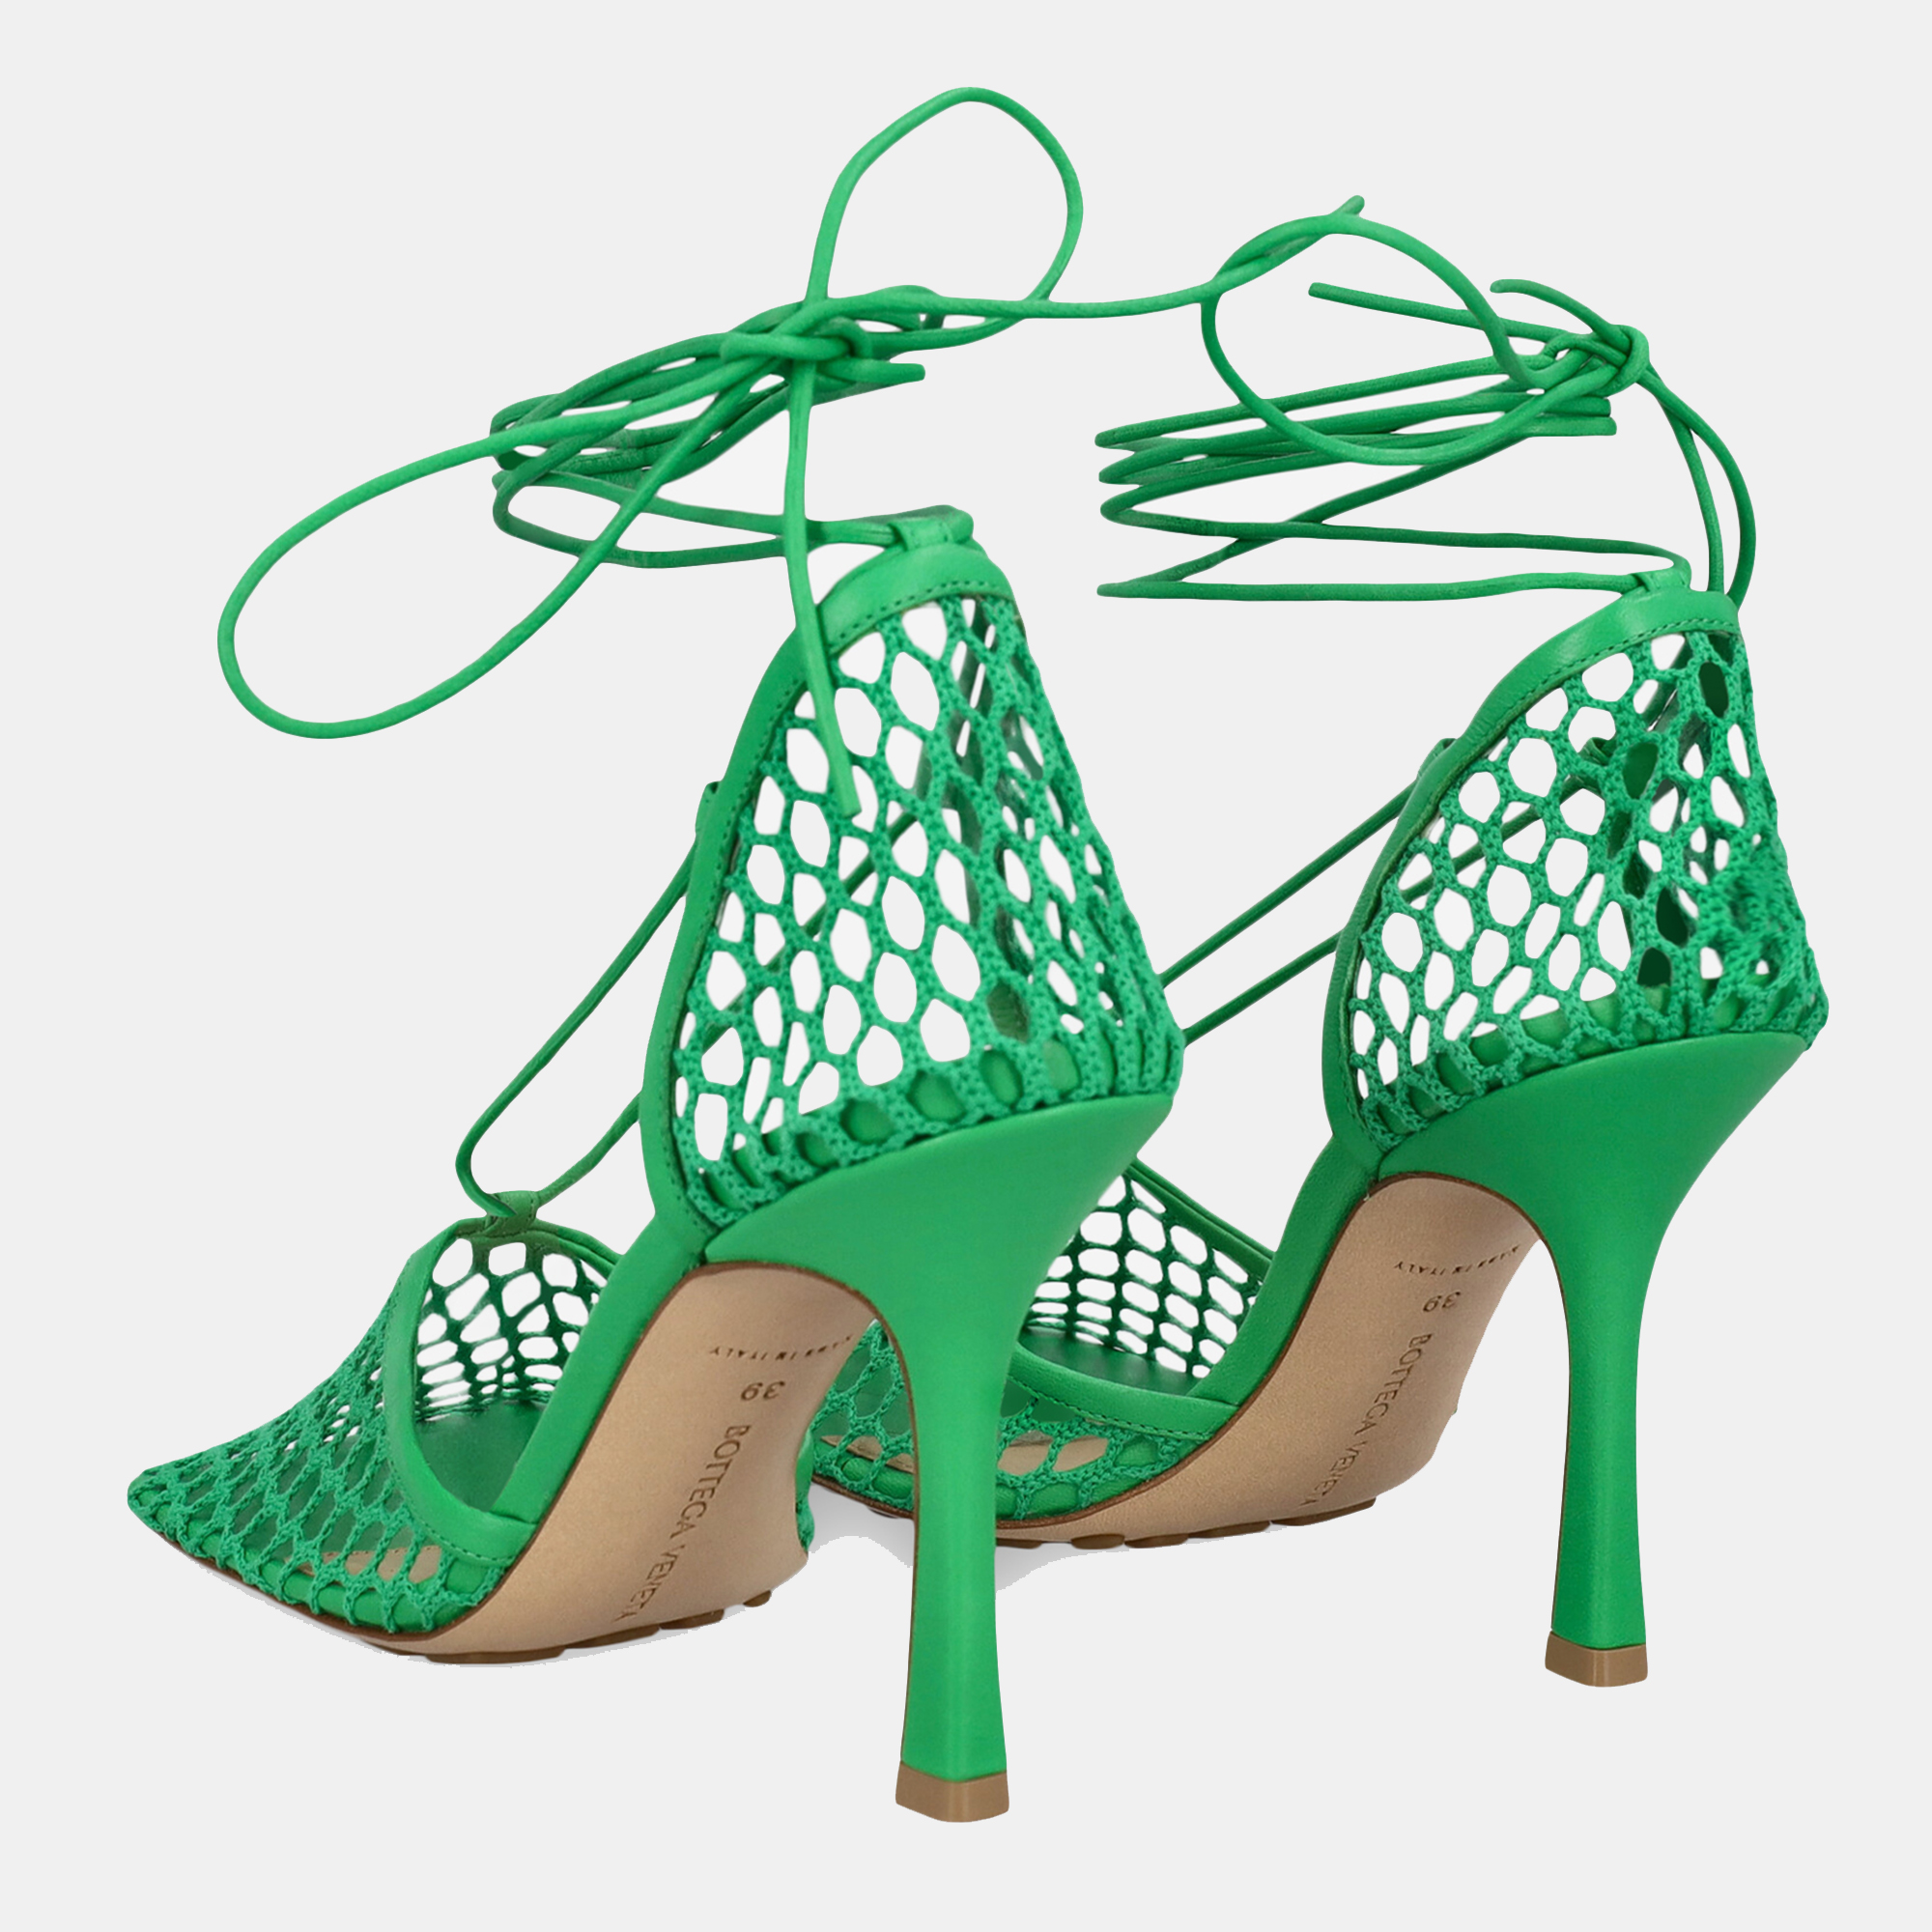 Bottega Veneta  Women's Leather Sandals - Green - EU 39